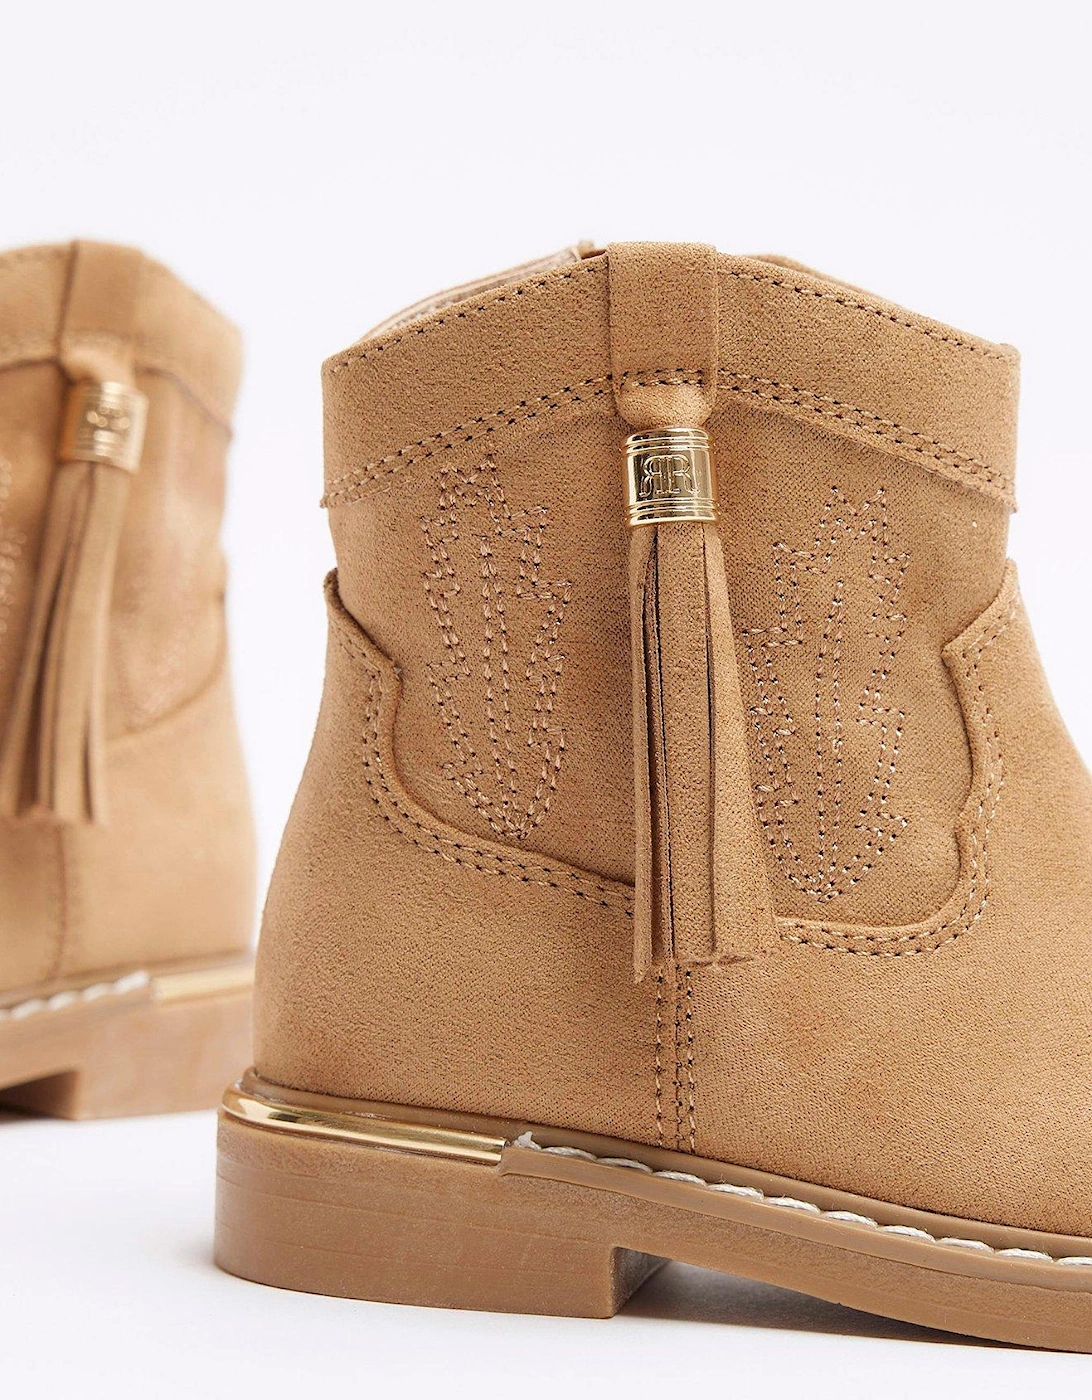 Mini Girls Tassel Western Boots - Brown